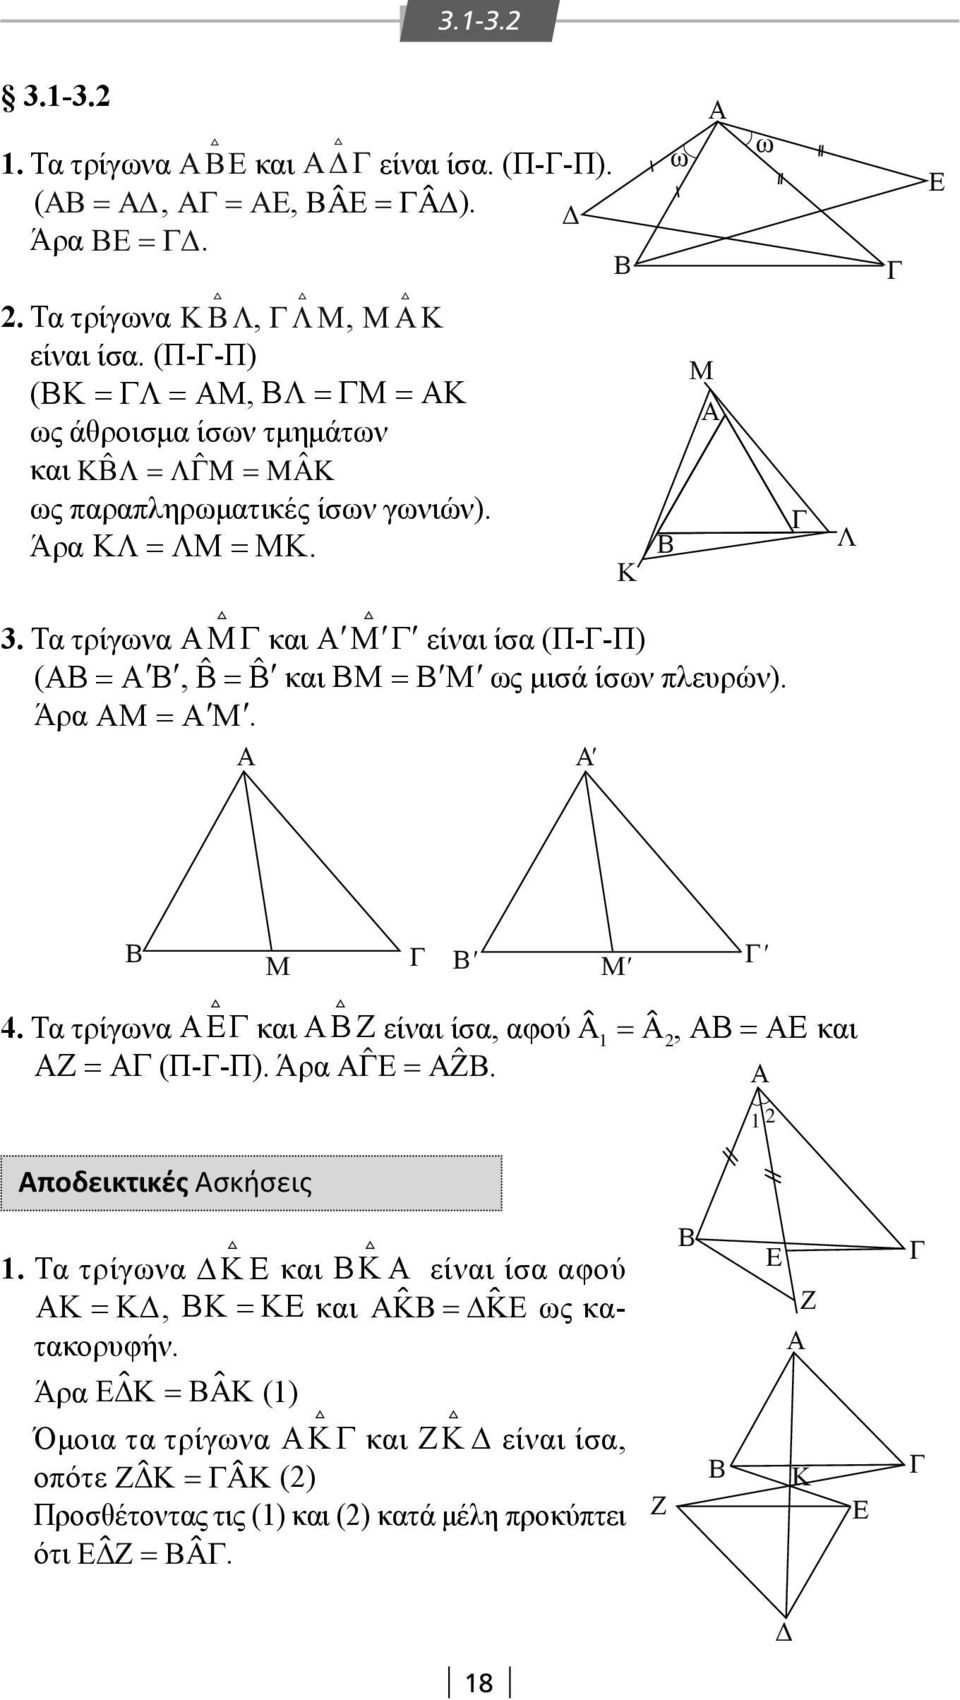 Τα τρίγωνα και είναι ίσα (Π--Π) ( =, = ˆ ˆ και = ως μισά ίσων πλευρών). Άρα =. ' ' ' ' 4. Τα τρίγωνα και Ζ είναι ίσα, αφού =, = και Ζ = (Π--Π). Άρα =Ζ.